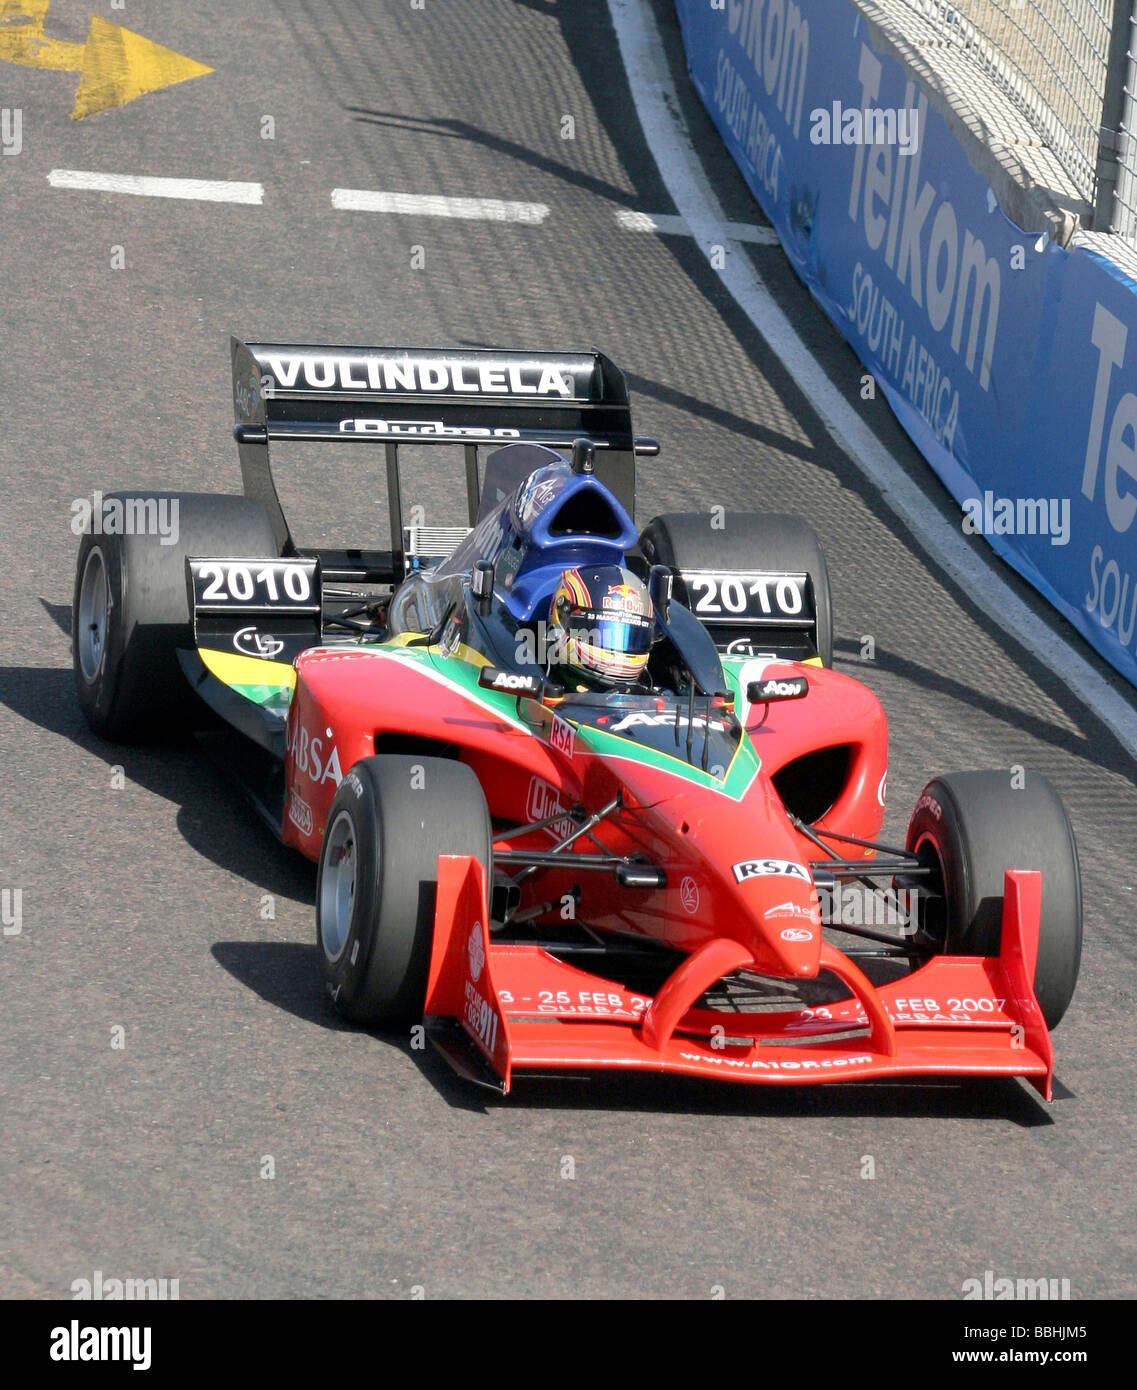 Team Südafrika s Adrian Zaugg rast durch die Strecke gewann Team Germany die A-1-Grand-Prix-Rennen für den 2007 Südafrika GP Stockfoto